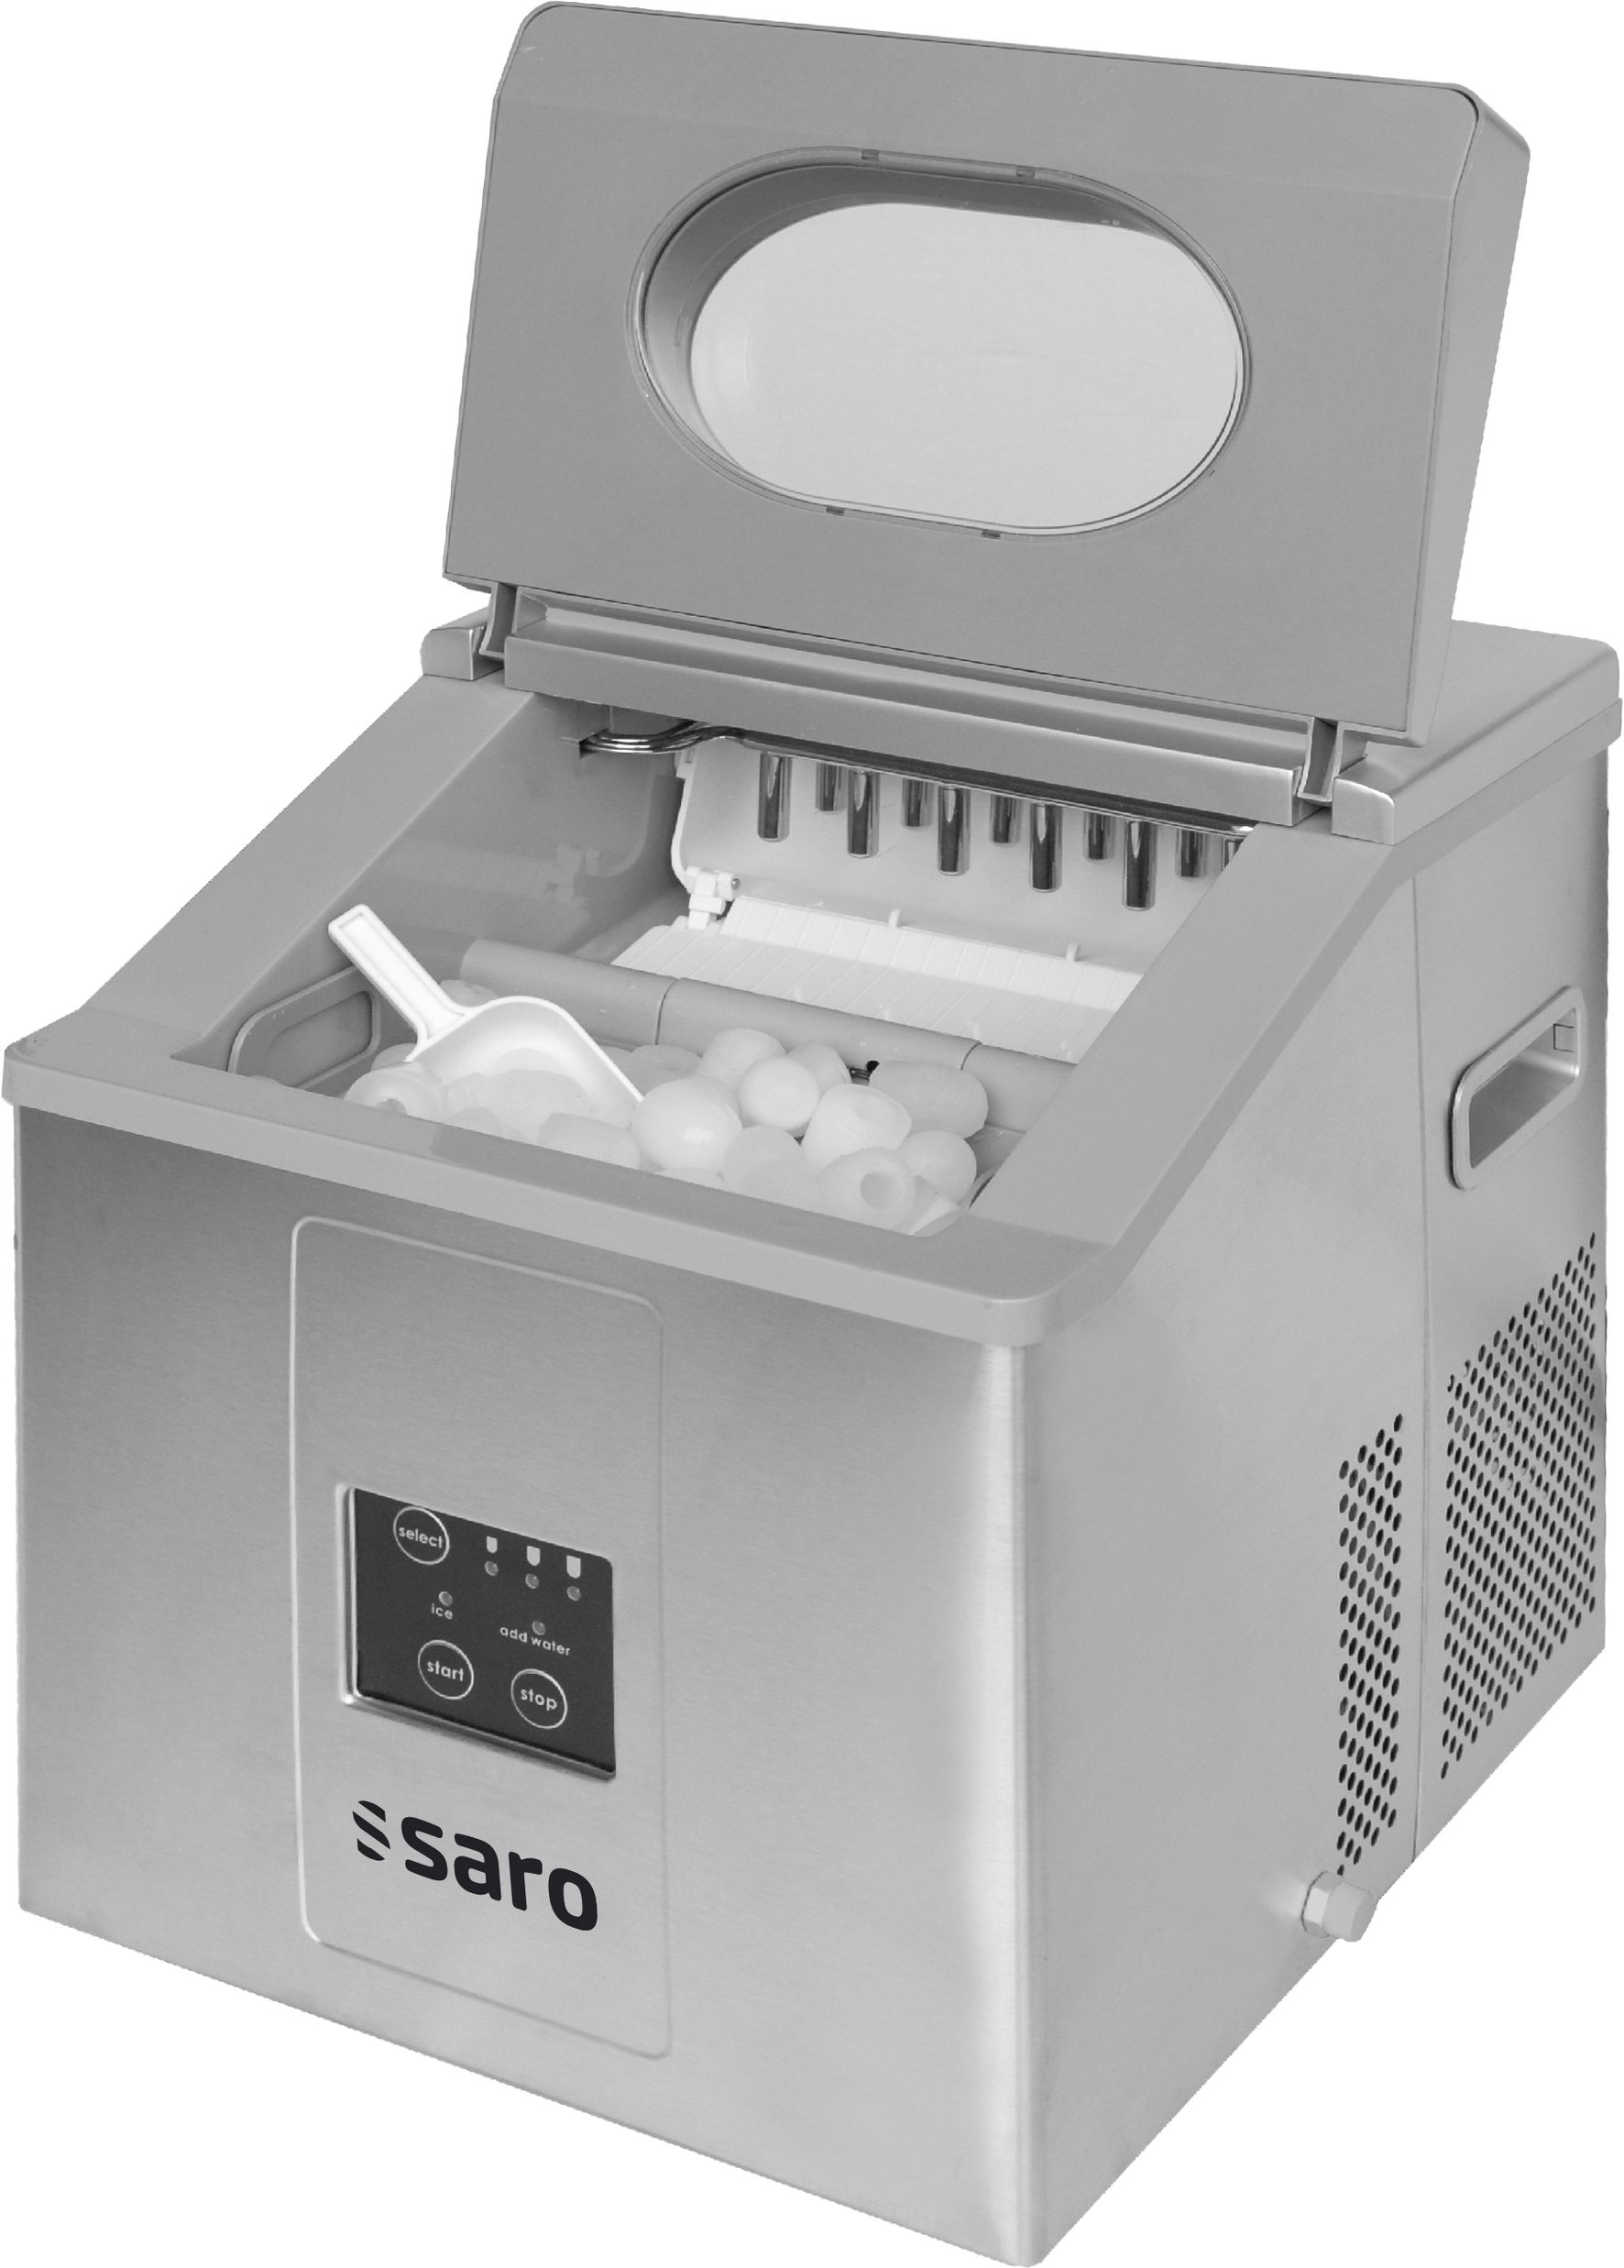 IJsblokjesmachine model EB 15 Saro